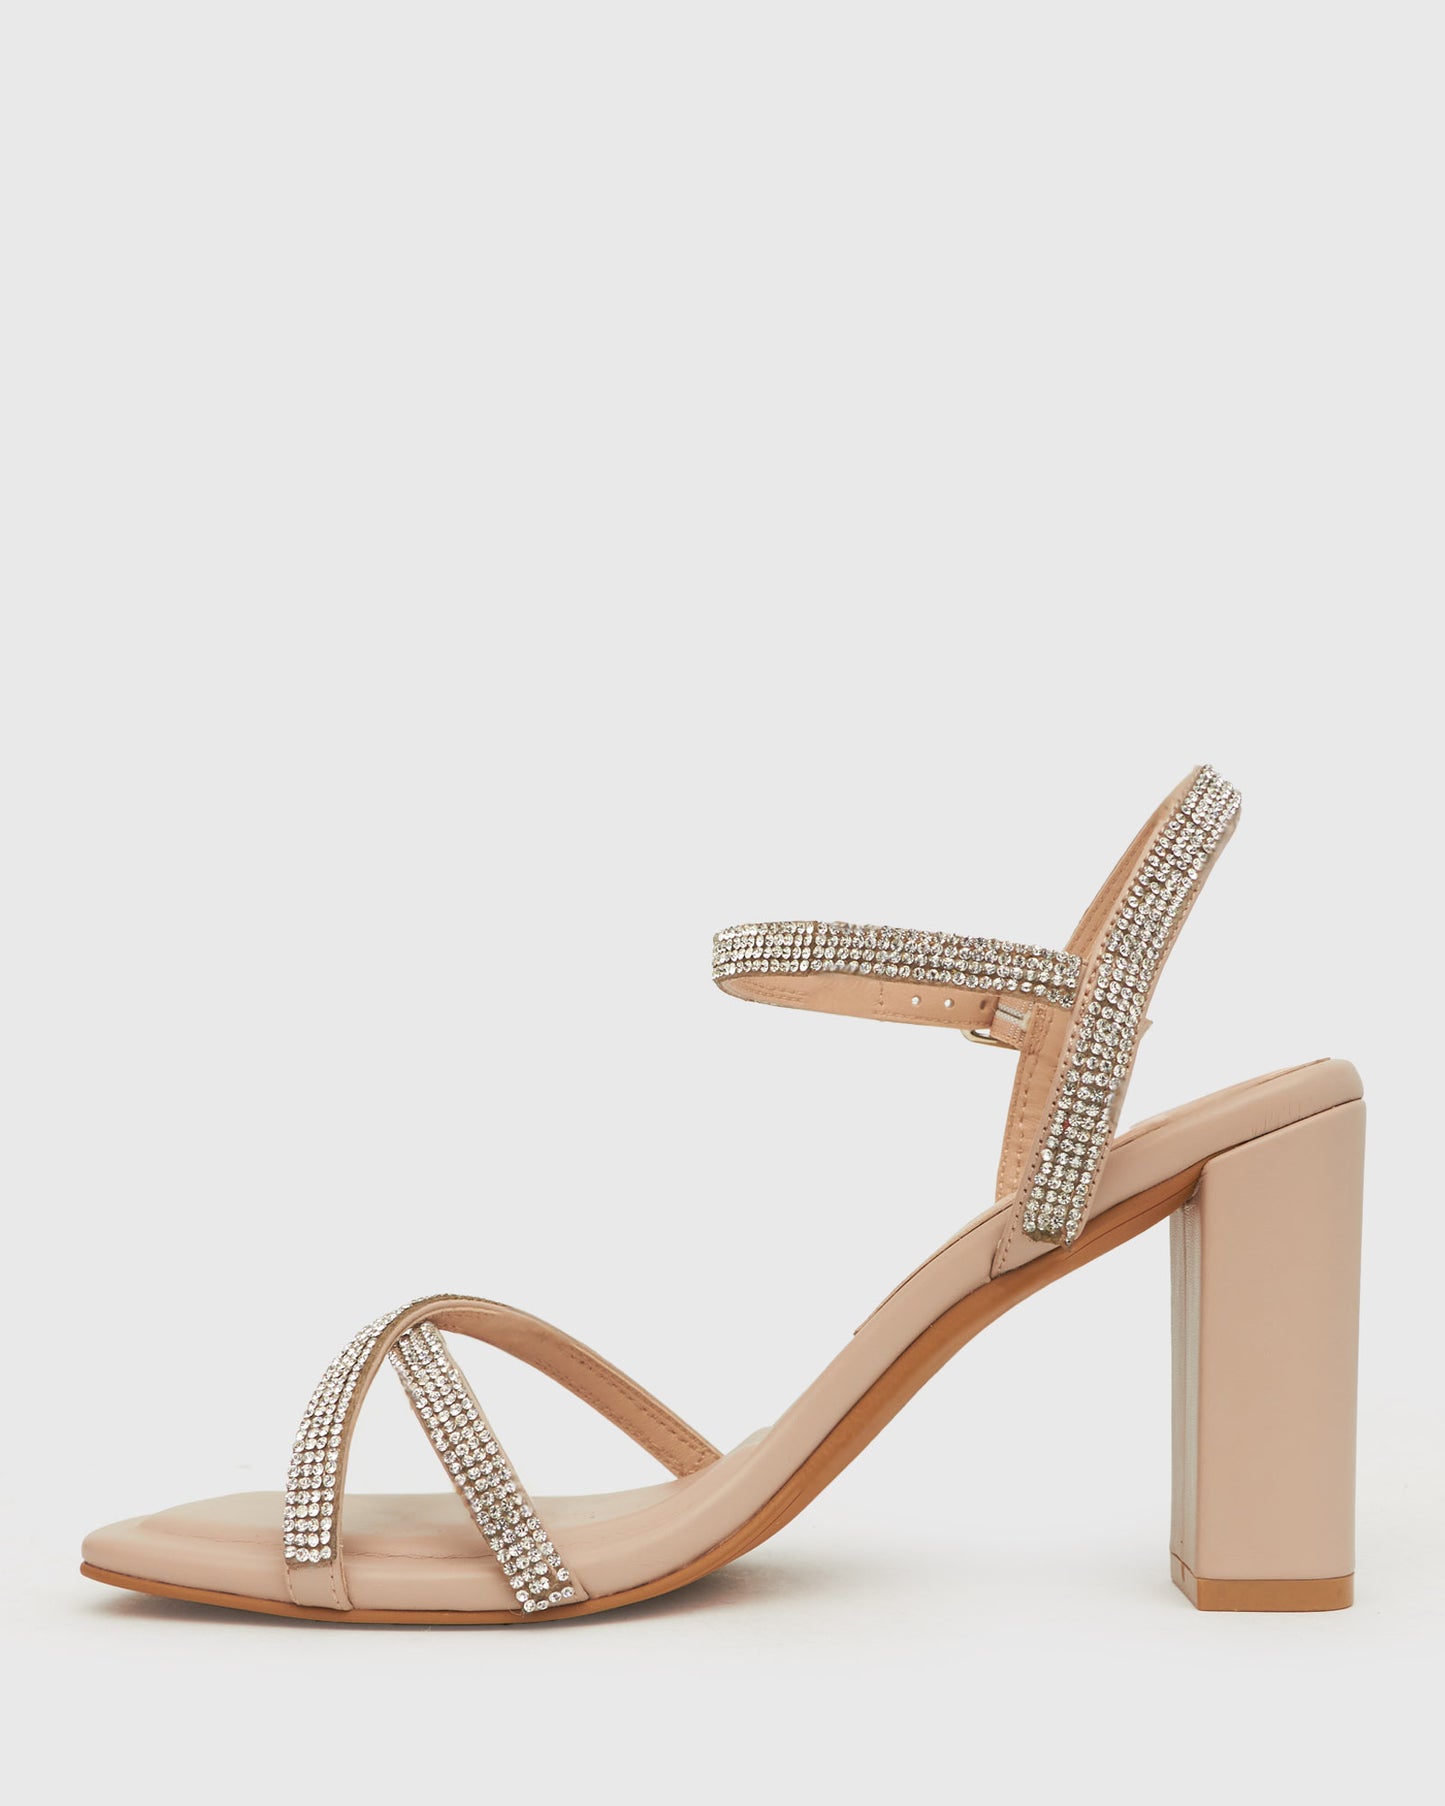 SWEET Square Toe Diamante Sandals